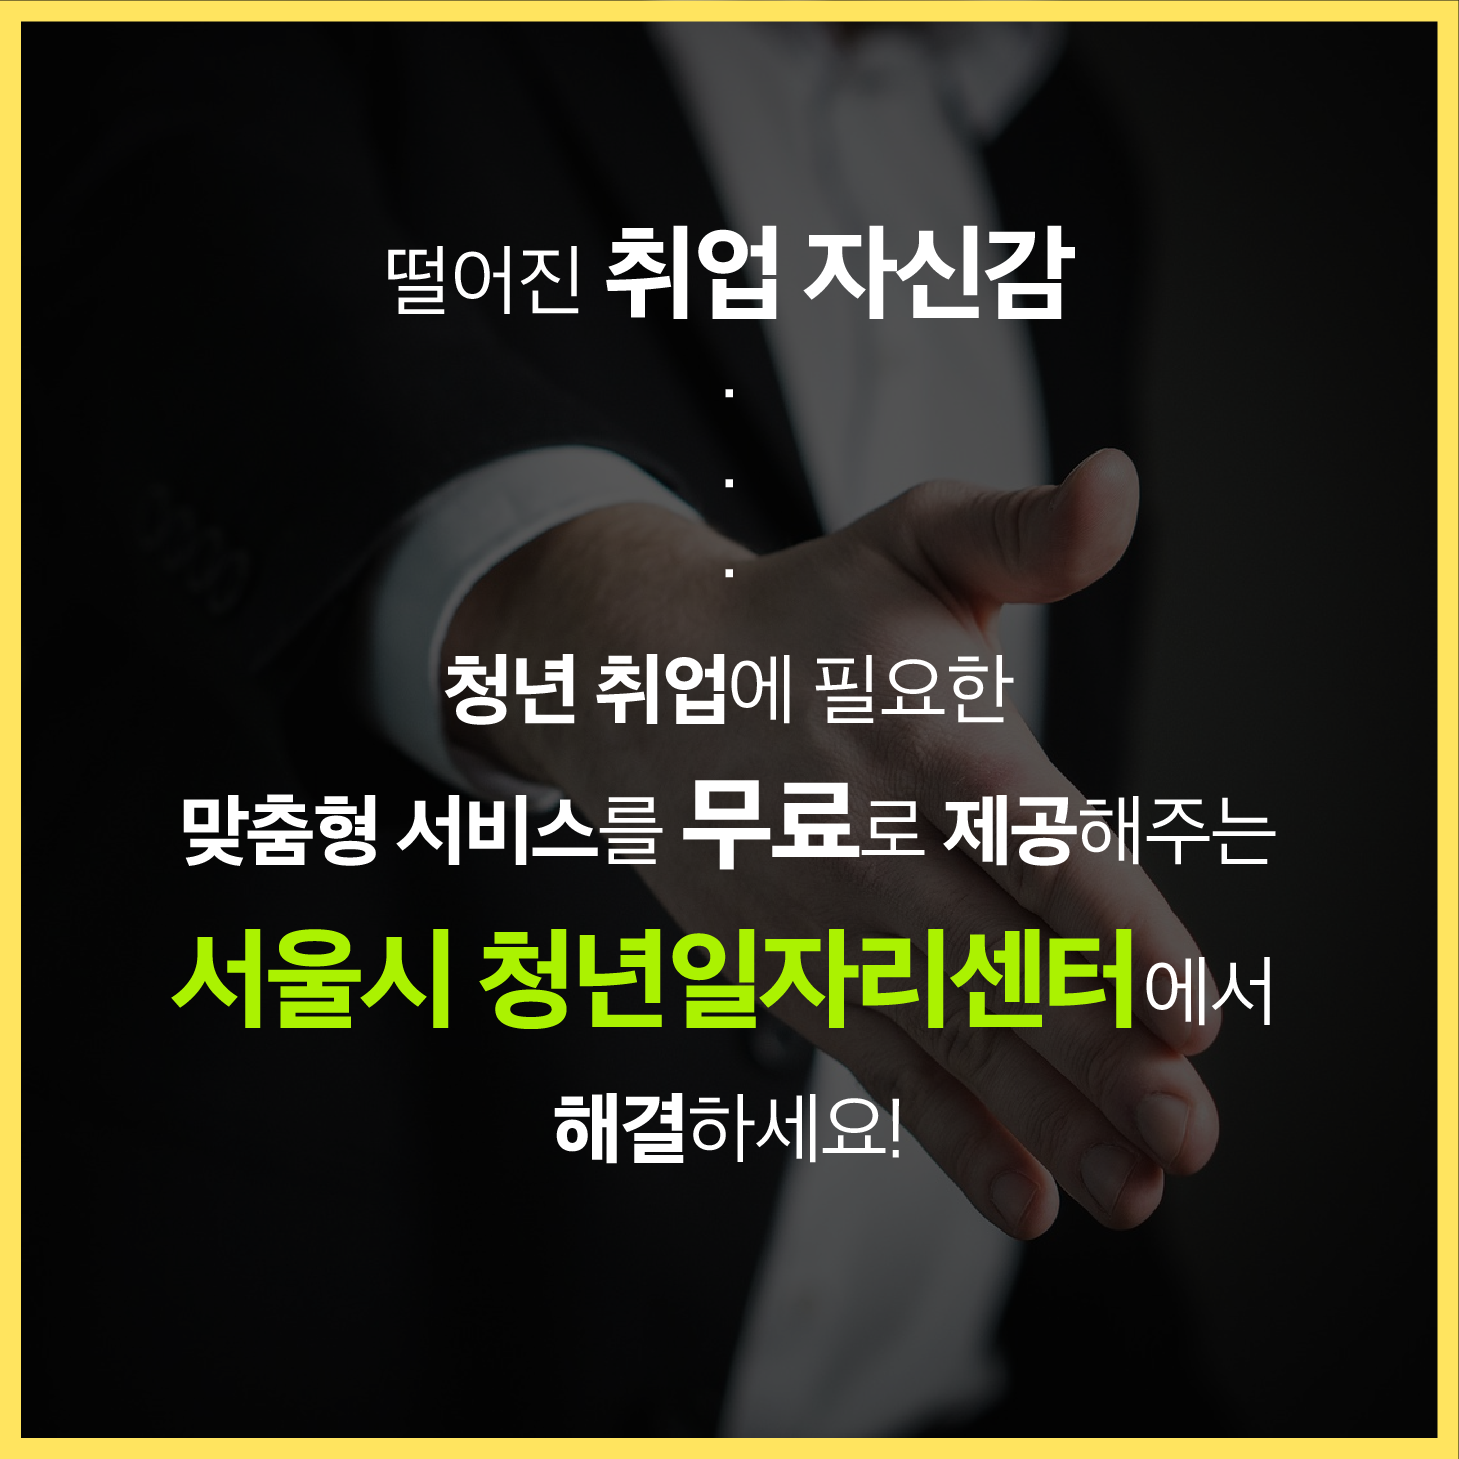 떨어진 취업 자신감 청년 취업에 필요한 맞춤형 서비스를 무료로 제공해주는 서울시 청년일자리센터에서 해결하세요!